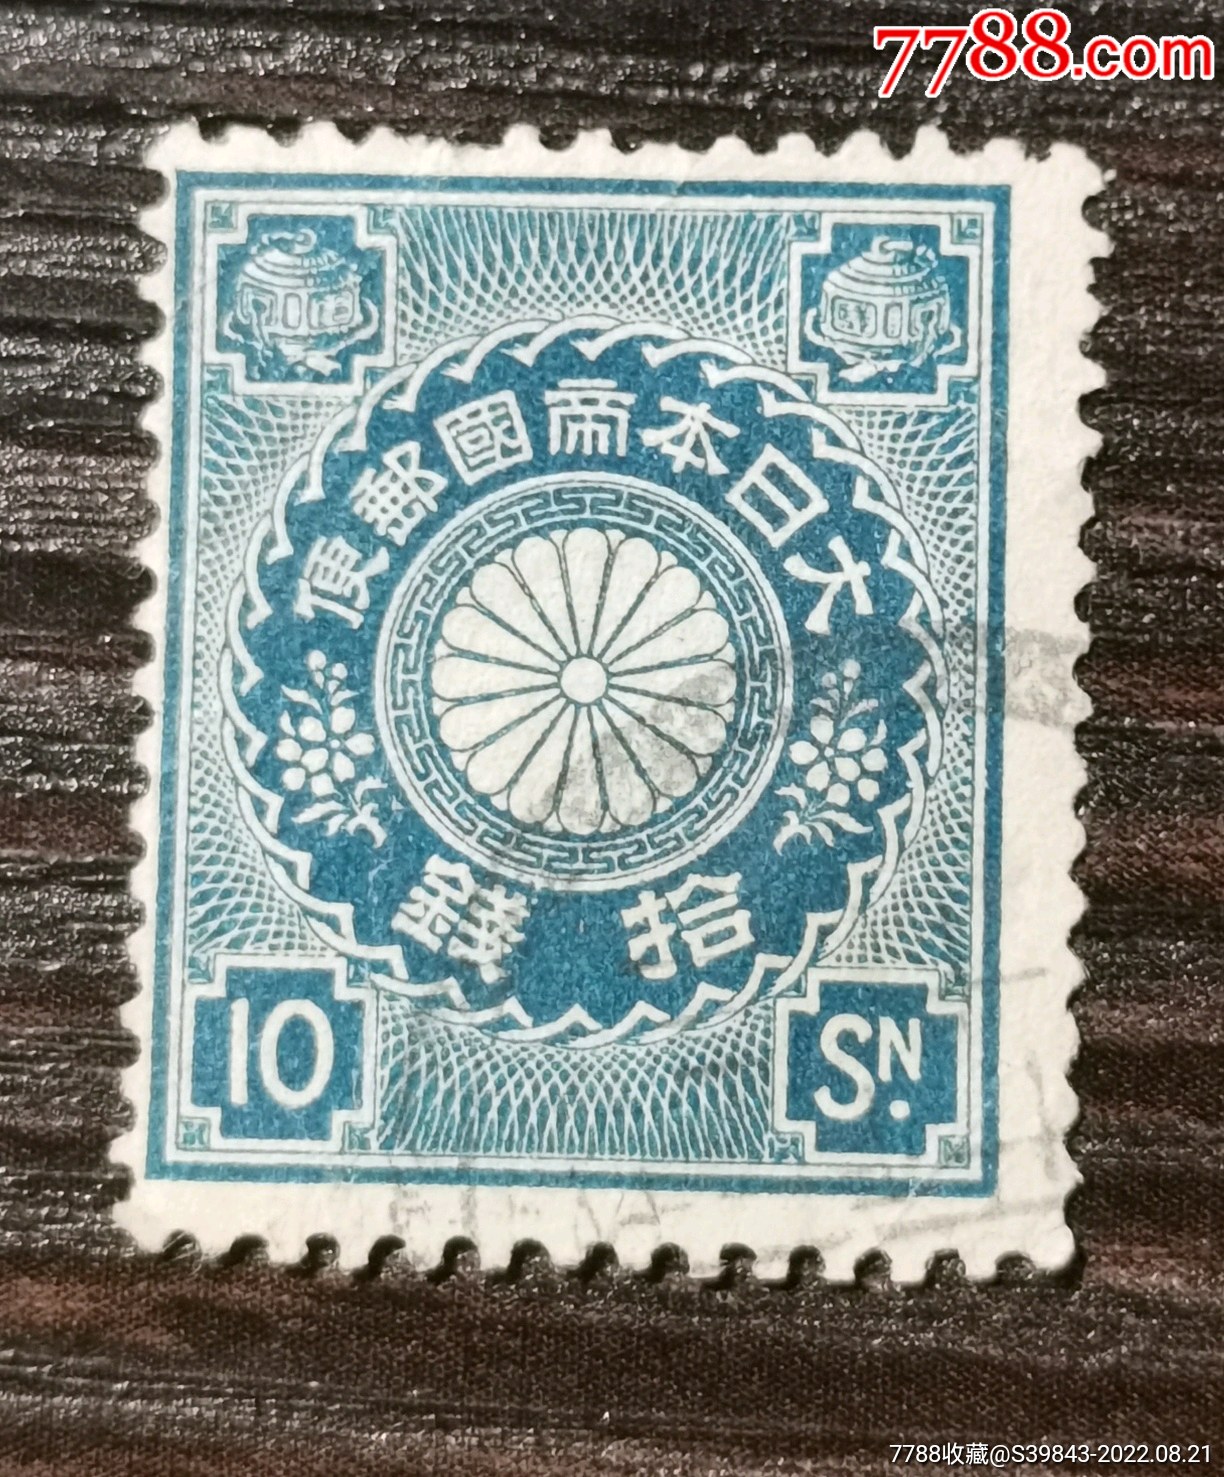 新浪收藏-贴日本邮票、满州国邮票、法国邮票加盖四枚日本妇女、旅顺要塞司令部、橿原神宫明信片各一件